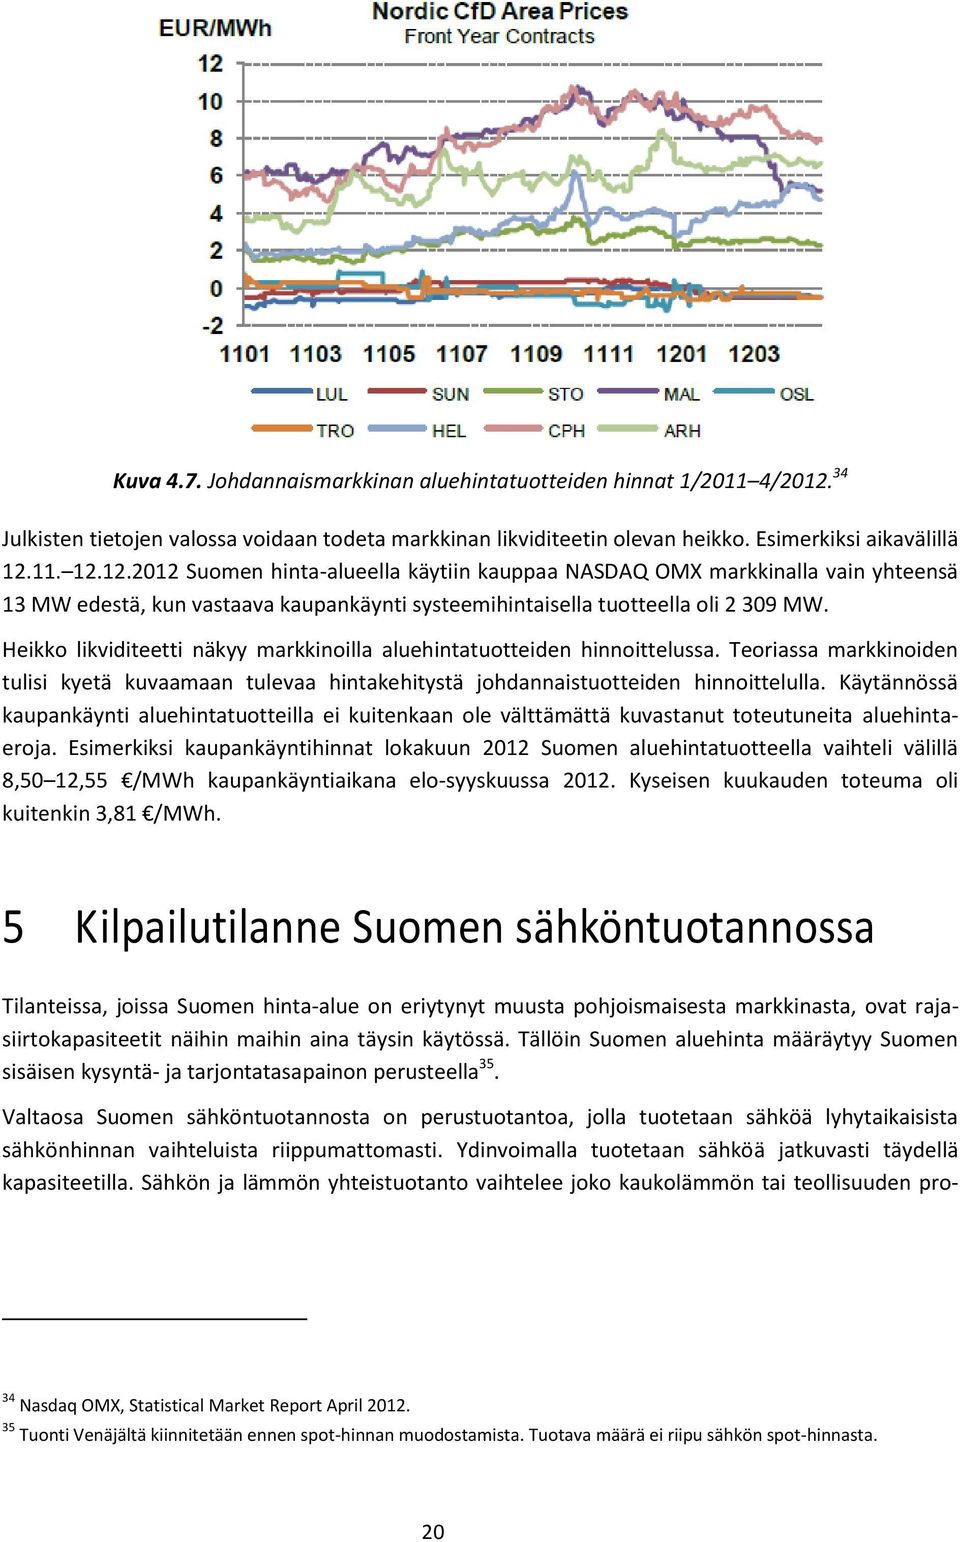 11. 12.12.2012 Suomen hinta-alueella käytiin kauppaa NASDAQ OMX markkinalla vain yhteensä 13 MW edestä, kun vastaava kaupankäynti systeemihintaisella tuotteella oli 2 309 MW.